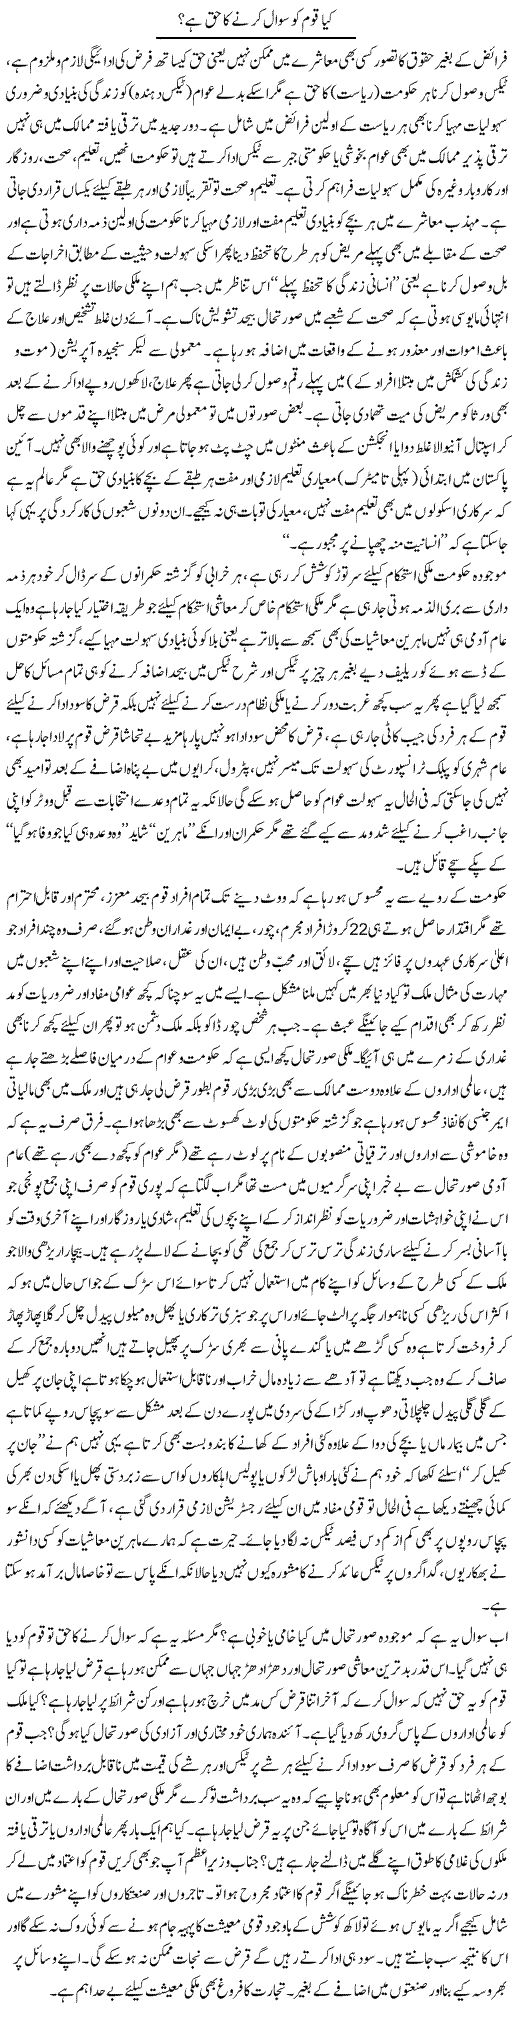 Kya Qoum Ko Sawal Karne Ka Haq Hai? | Najma Alam | Daily Urdu Columns